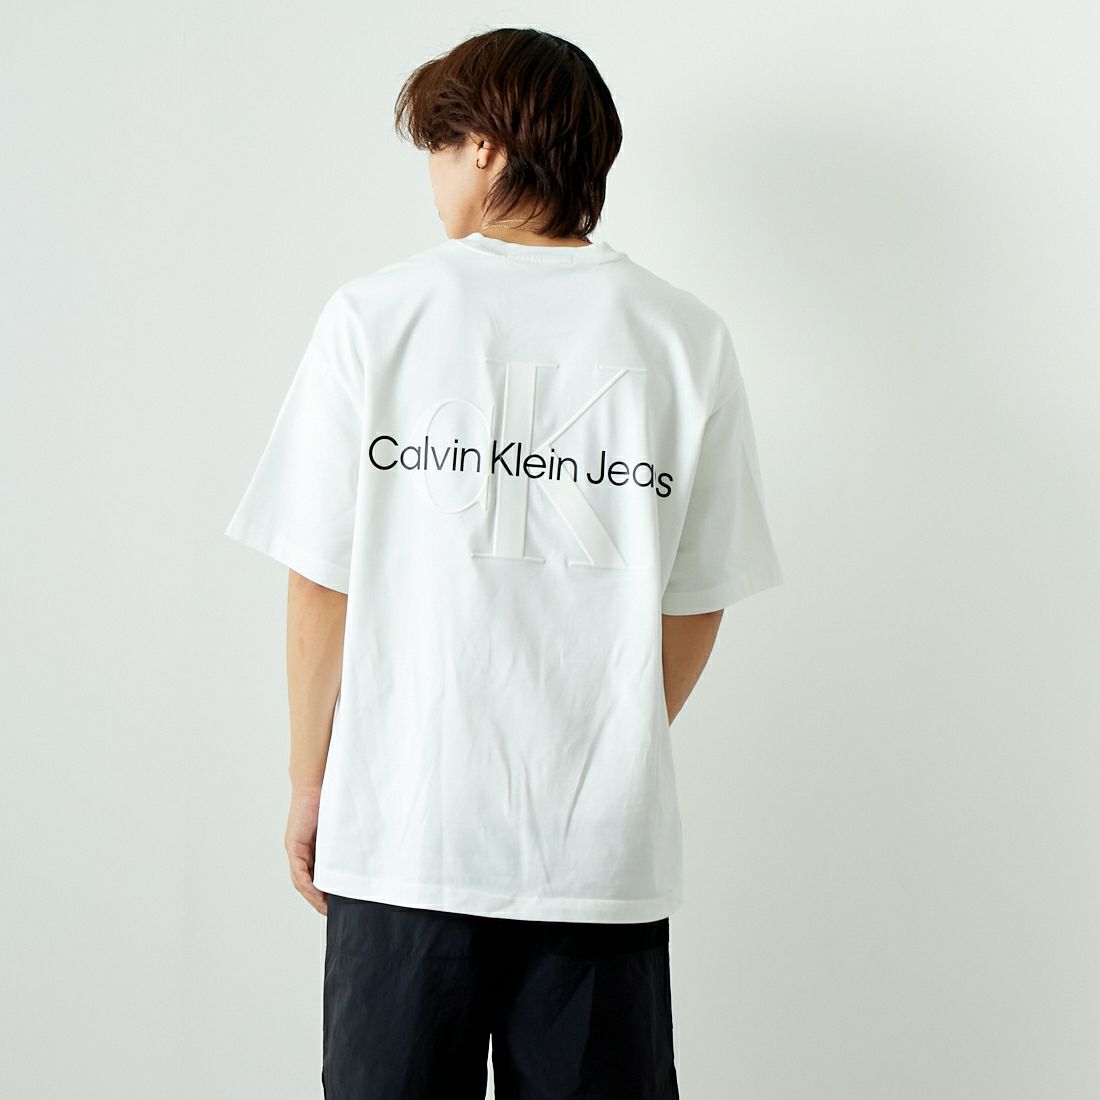 Calvin Klein [カルバンクライン] ショートスリーブ エンボスロゴTシャツ [J400377]